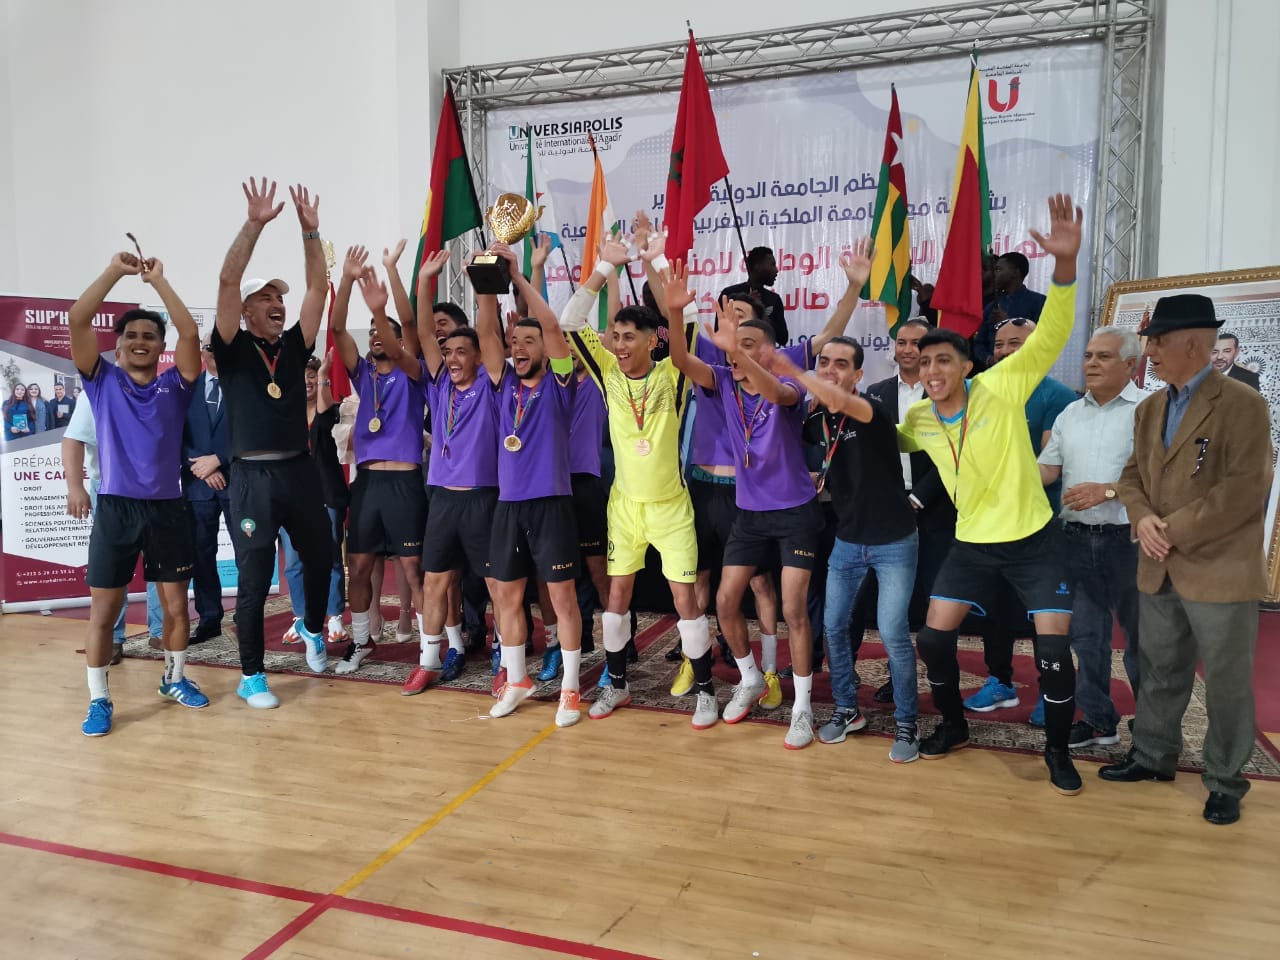 Le Championnat National Universitaire de Futsal et de Beach Soccer à Agadir à l'Université UNIVERSIAPOLIS